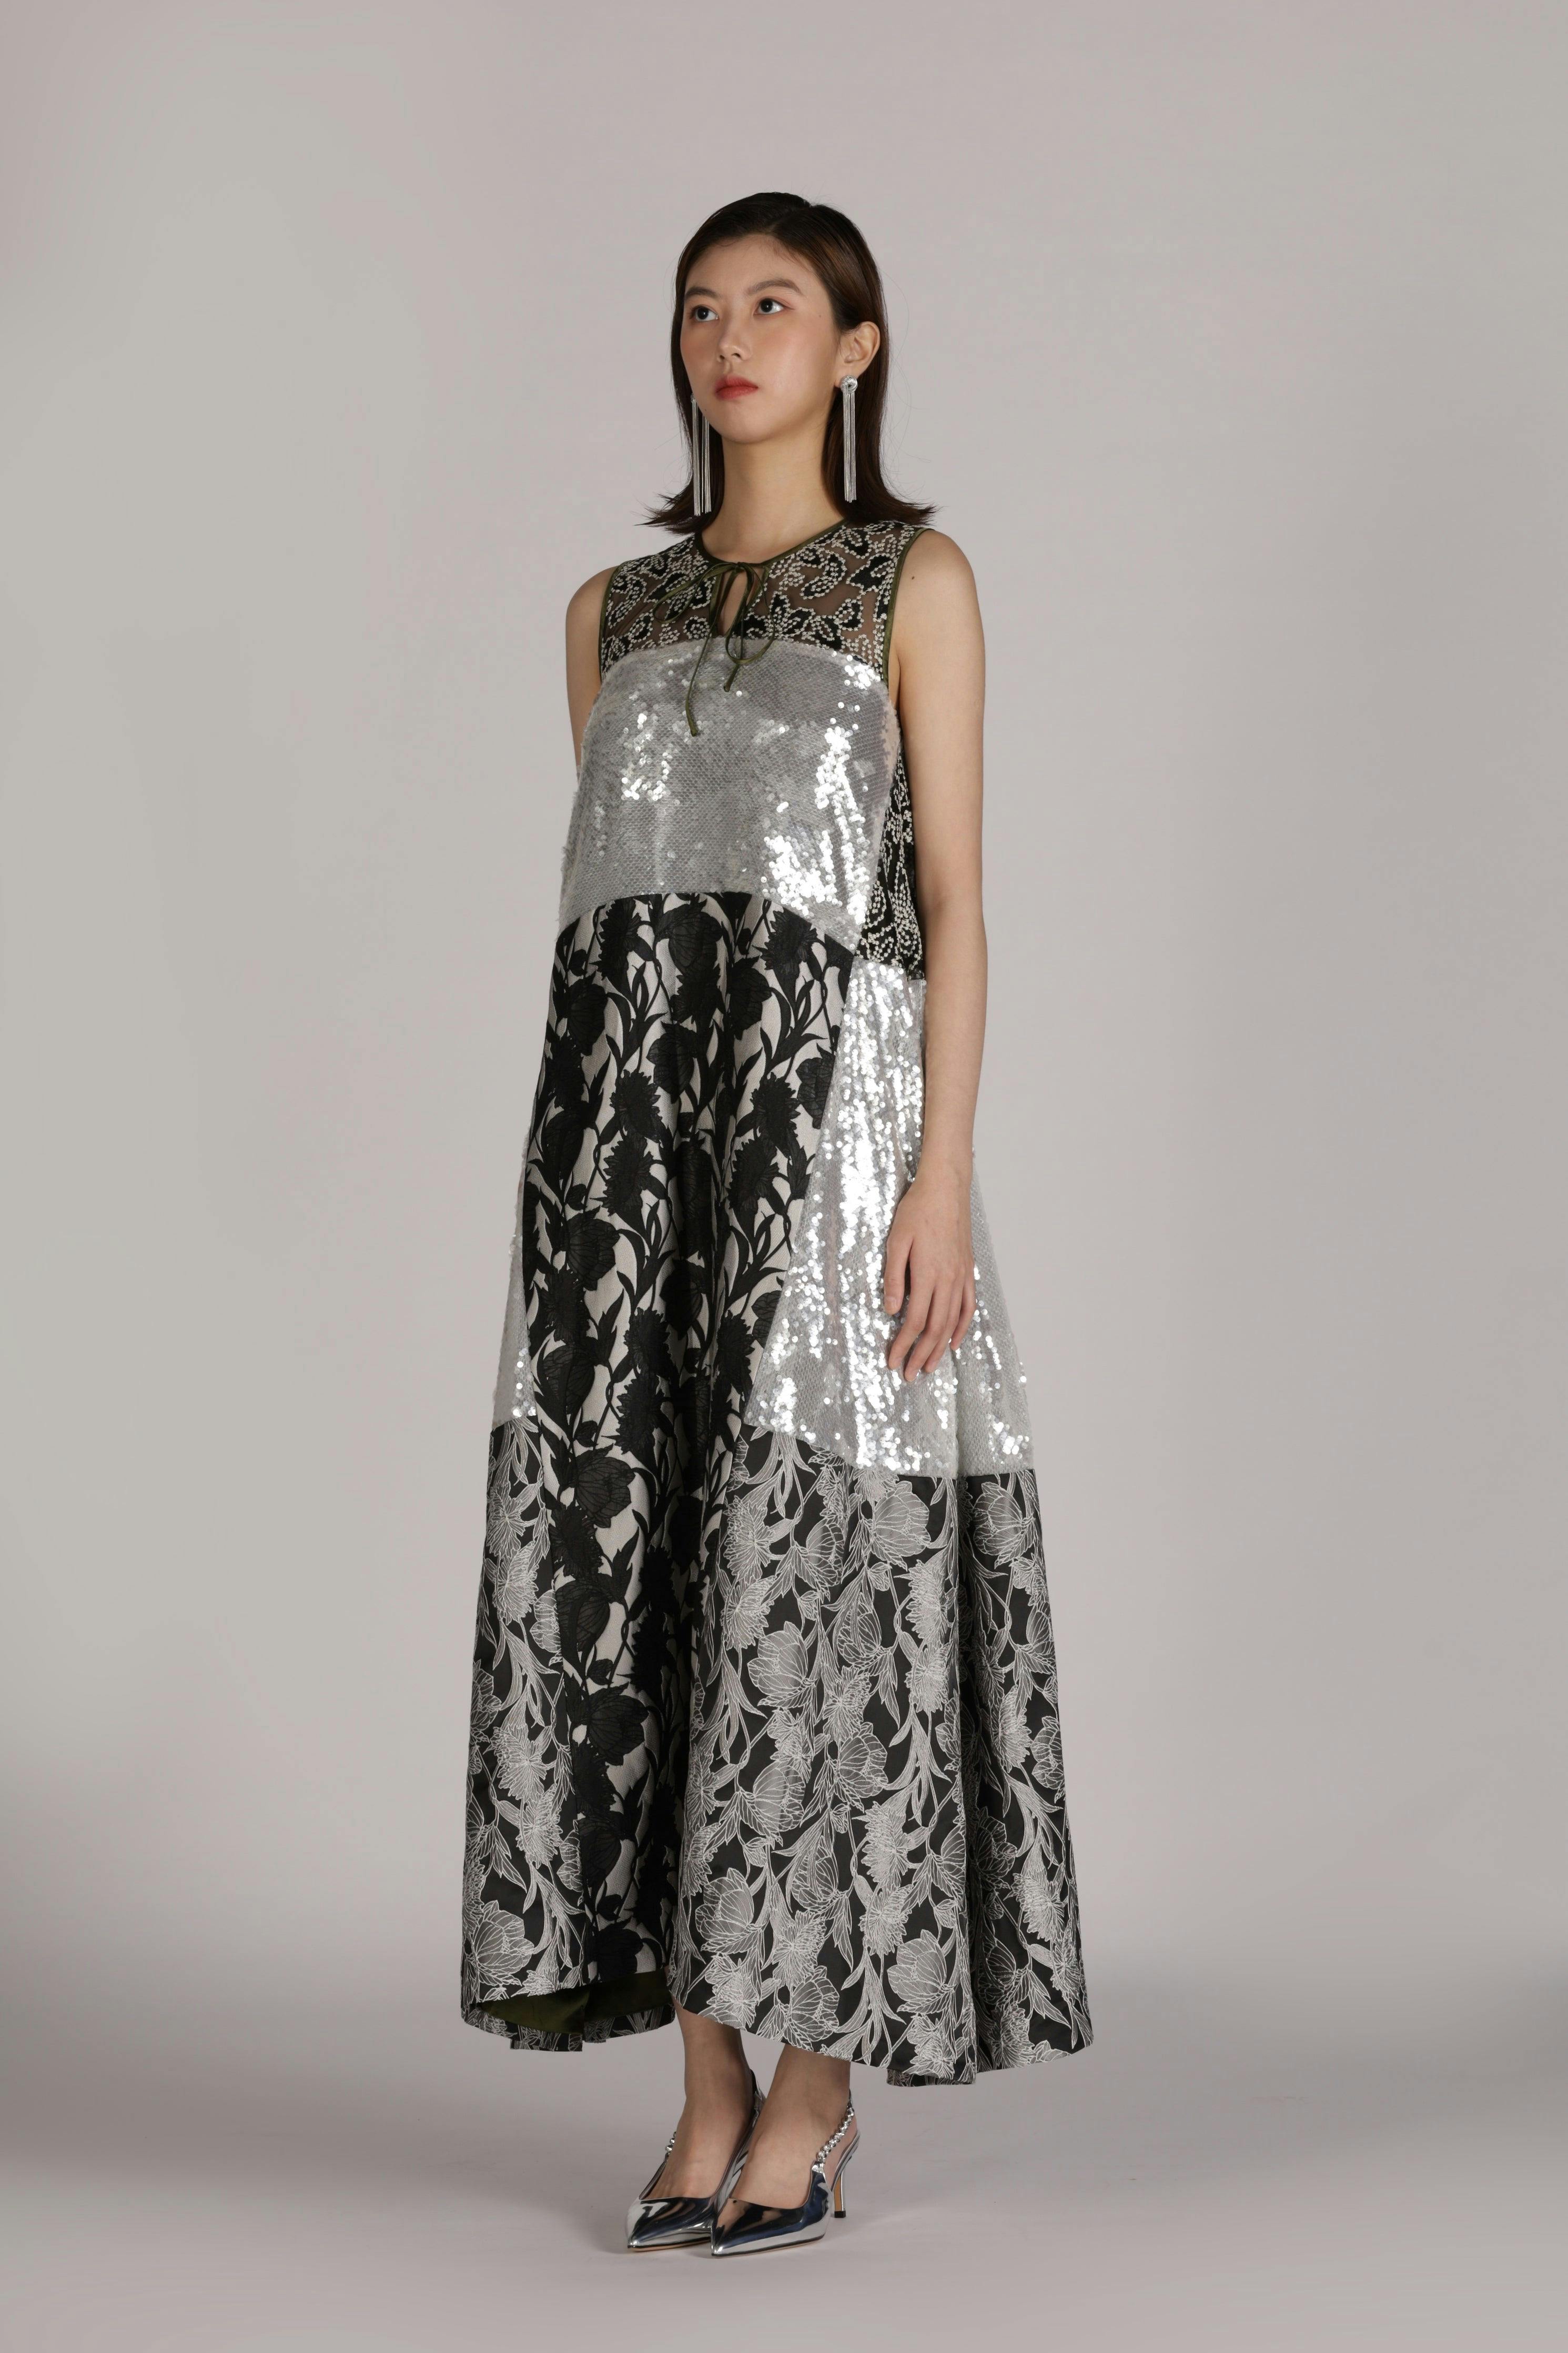 Patchwork Sequin Dress, a product by SZMAN